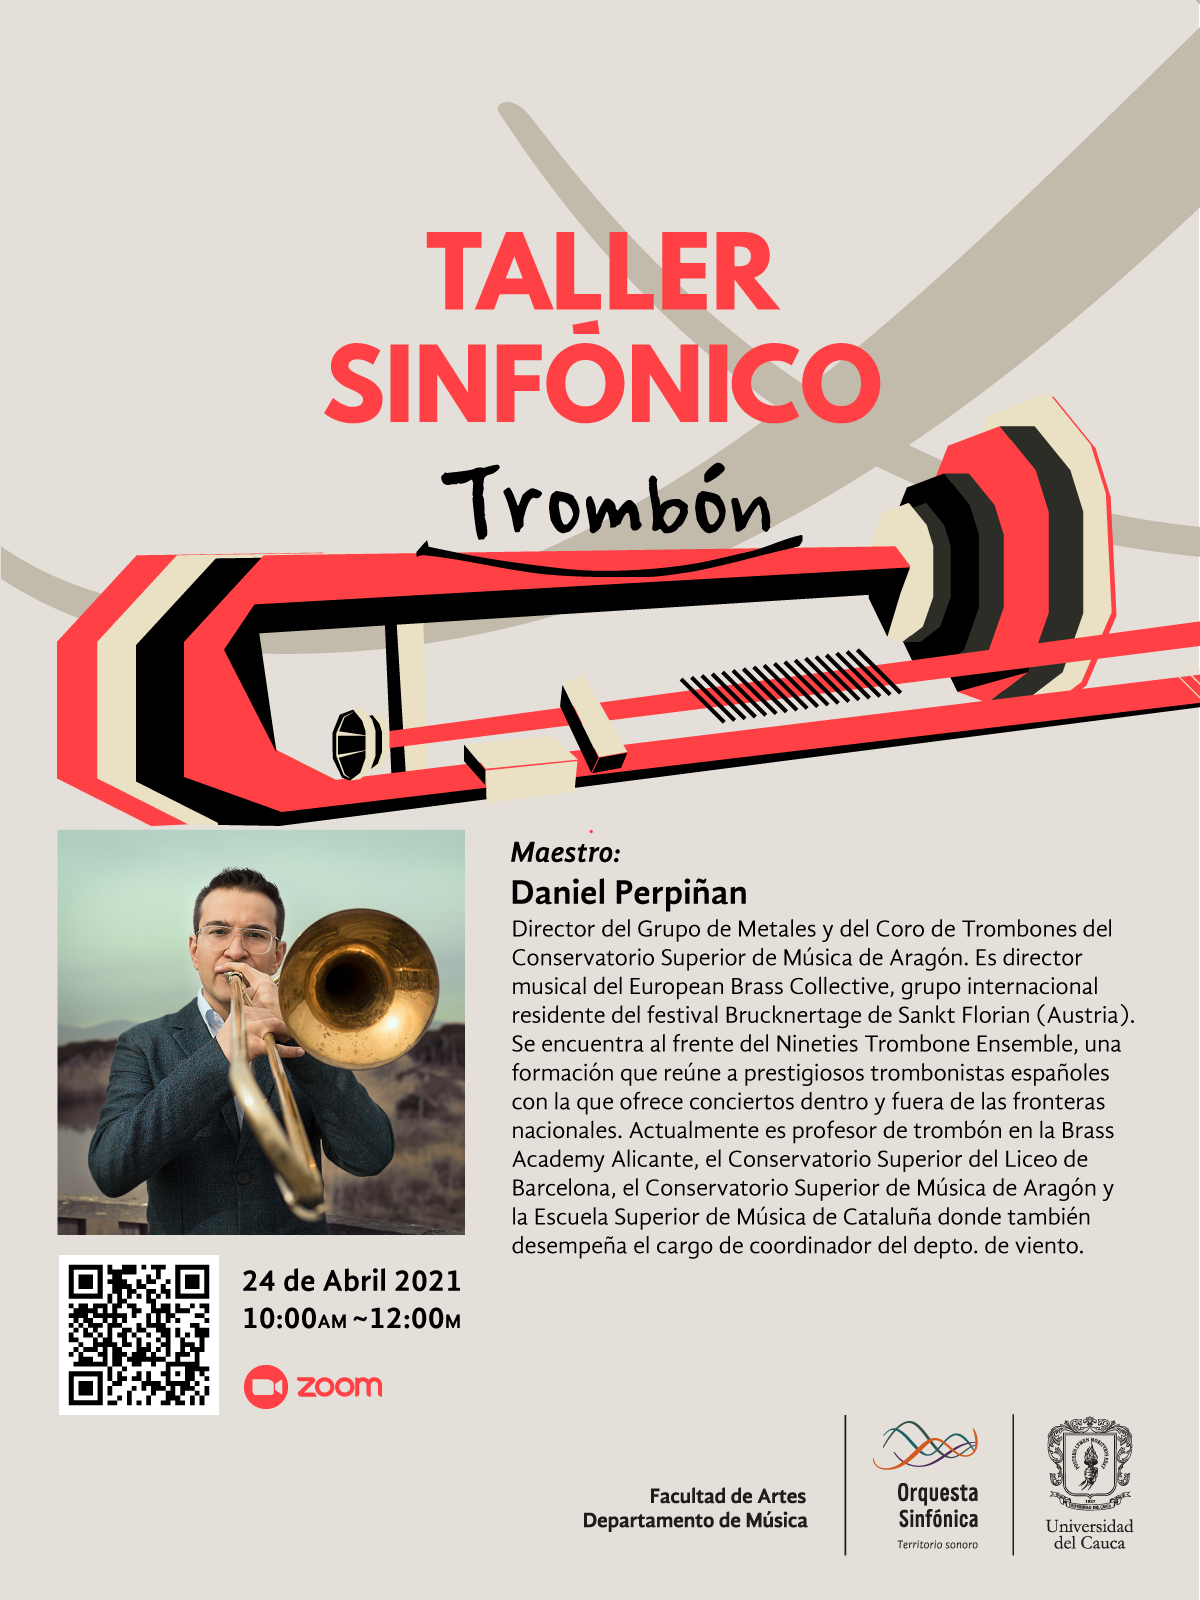 Taller Sinfónico de Trombón con Daniel Perpiñán